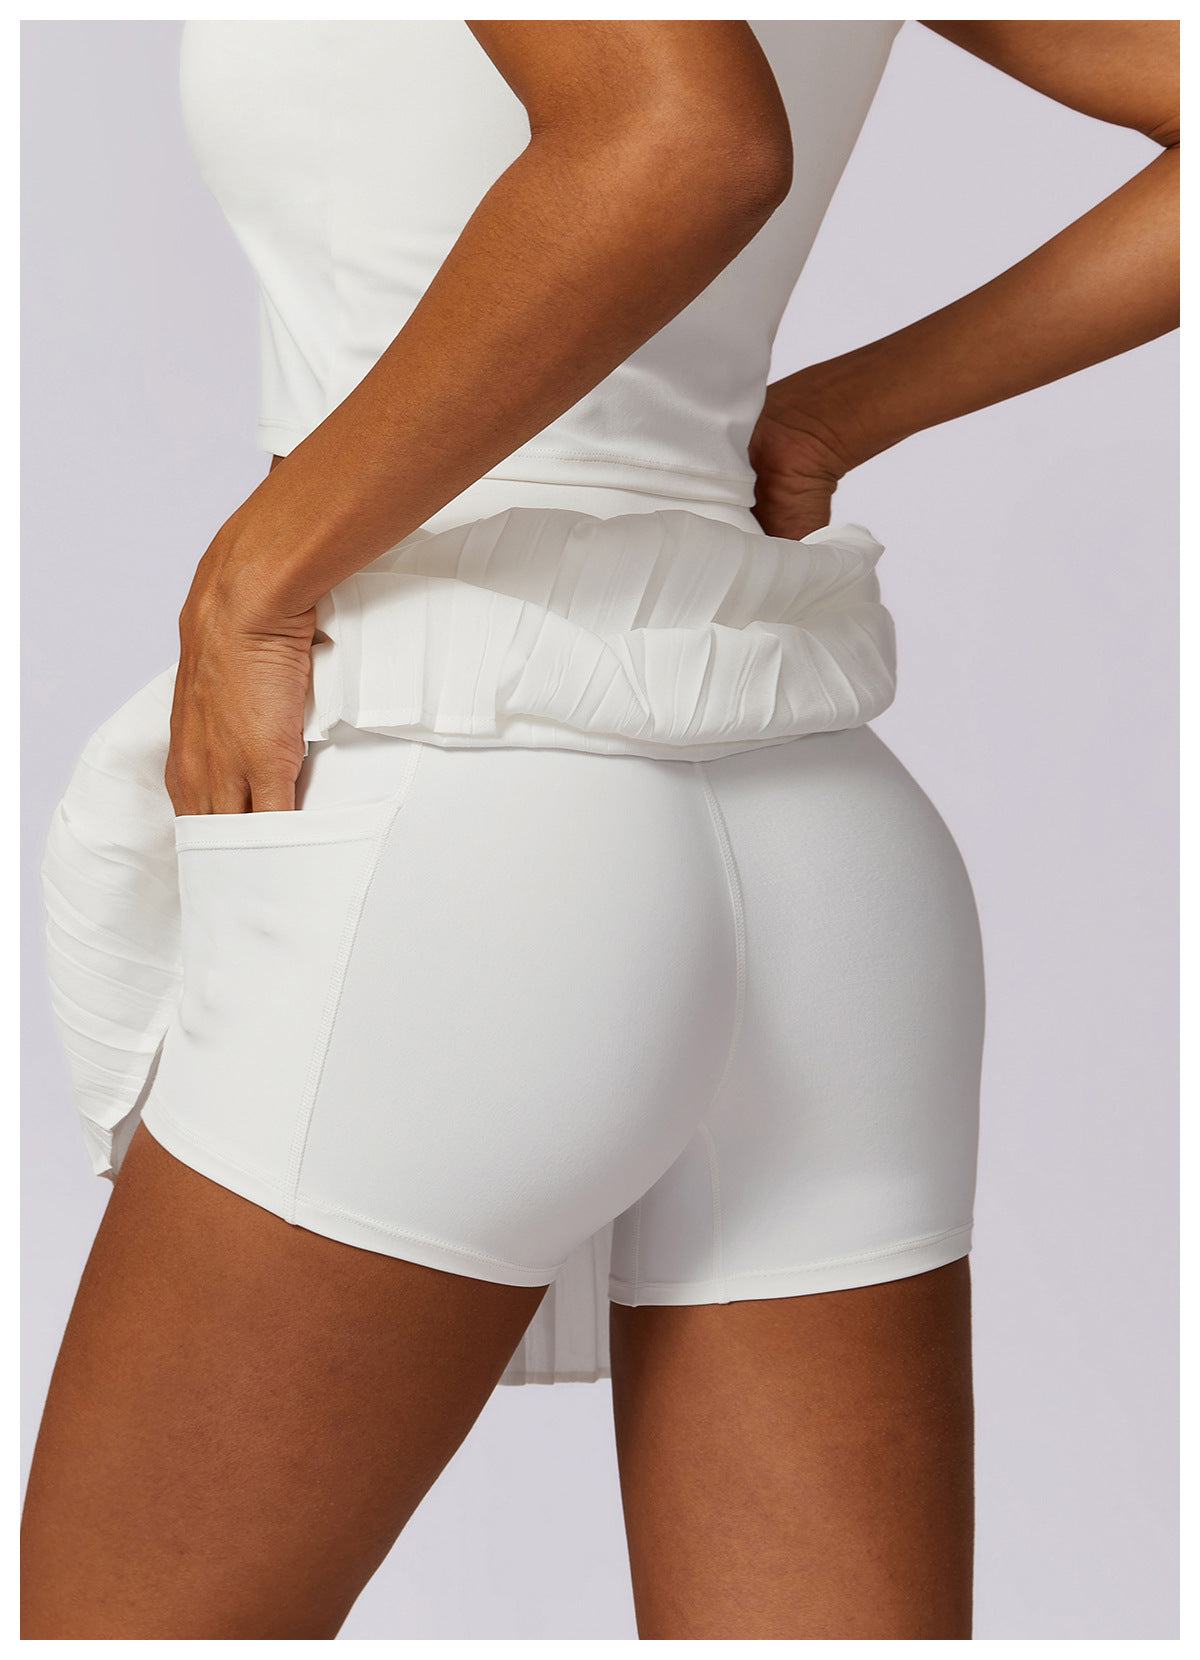 Dwuczęściowa, szybkoschnąca, sztuczna spódnica tenisowa typu culottes, odporna na ekspozycję